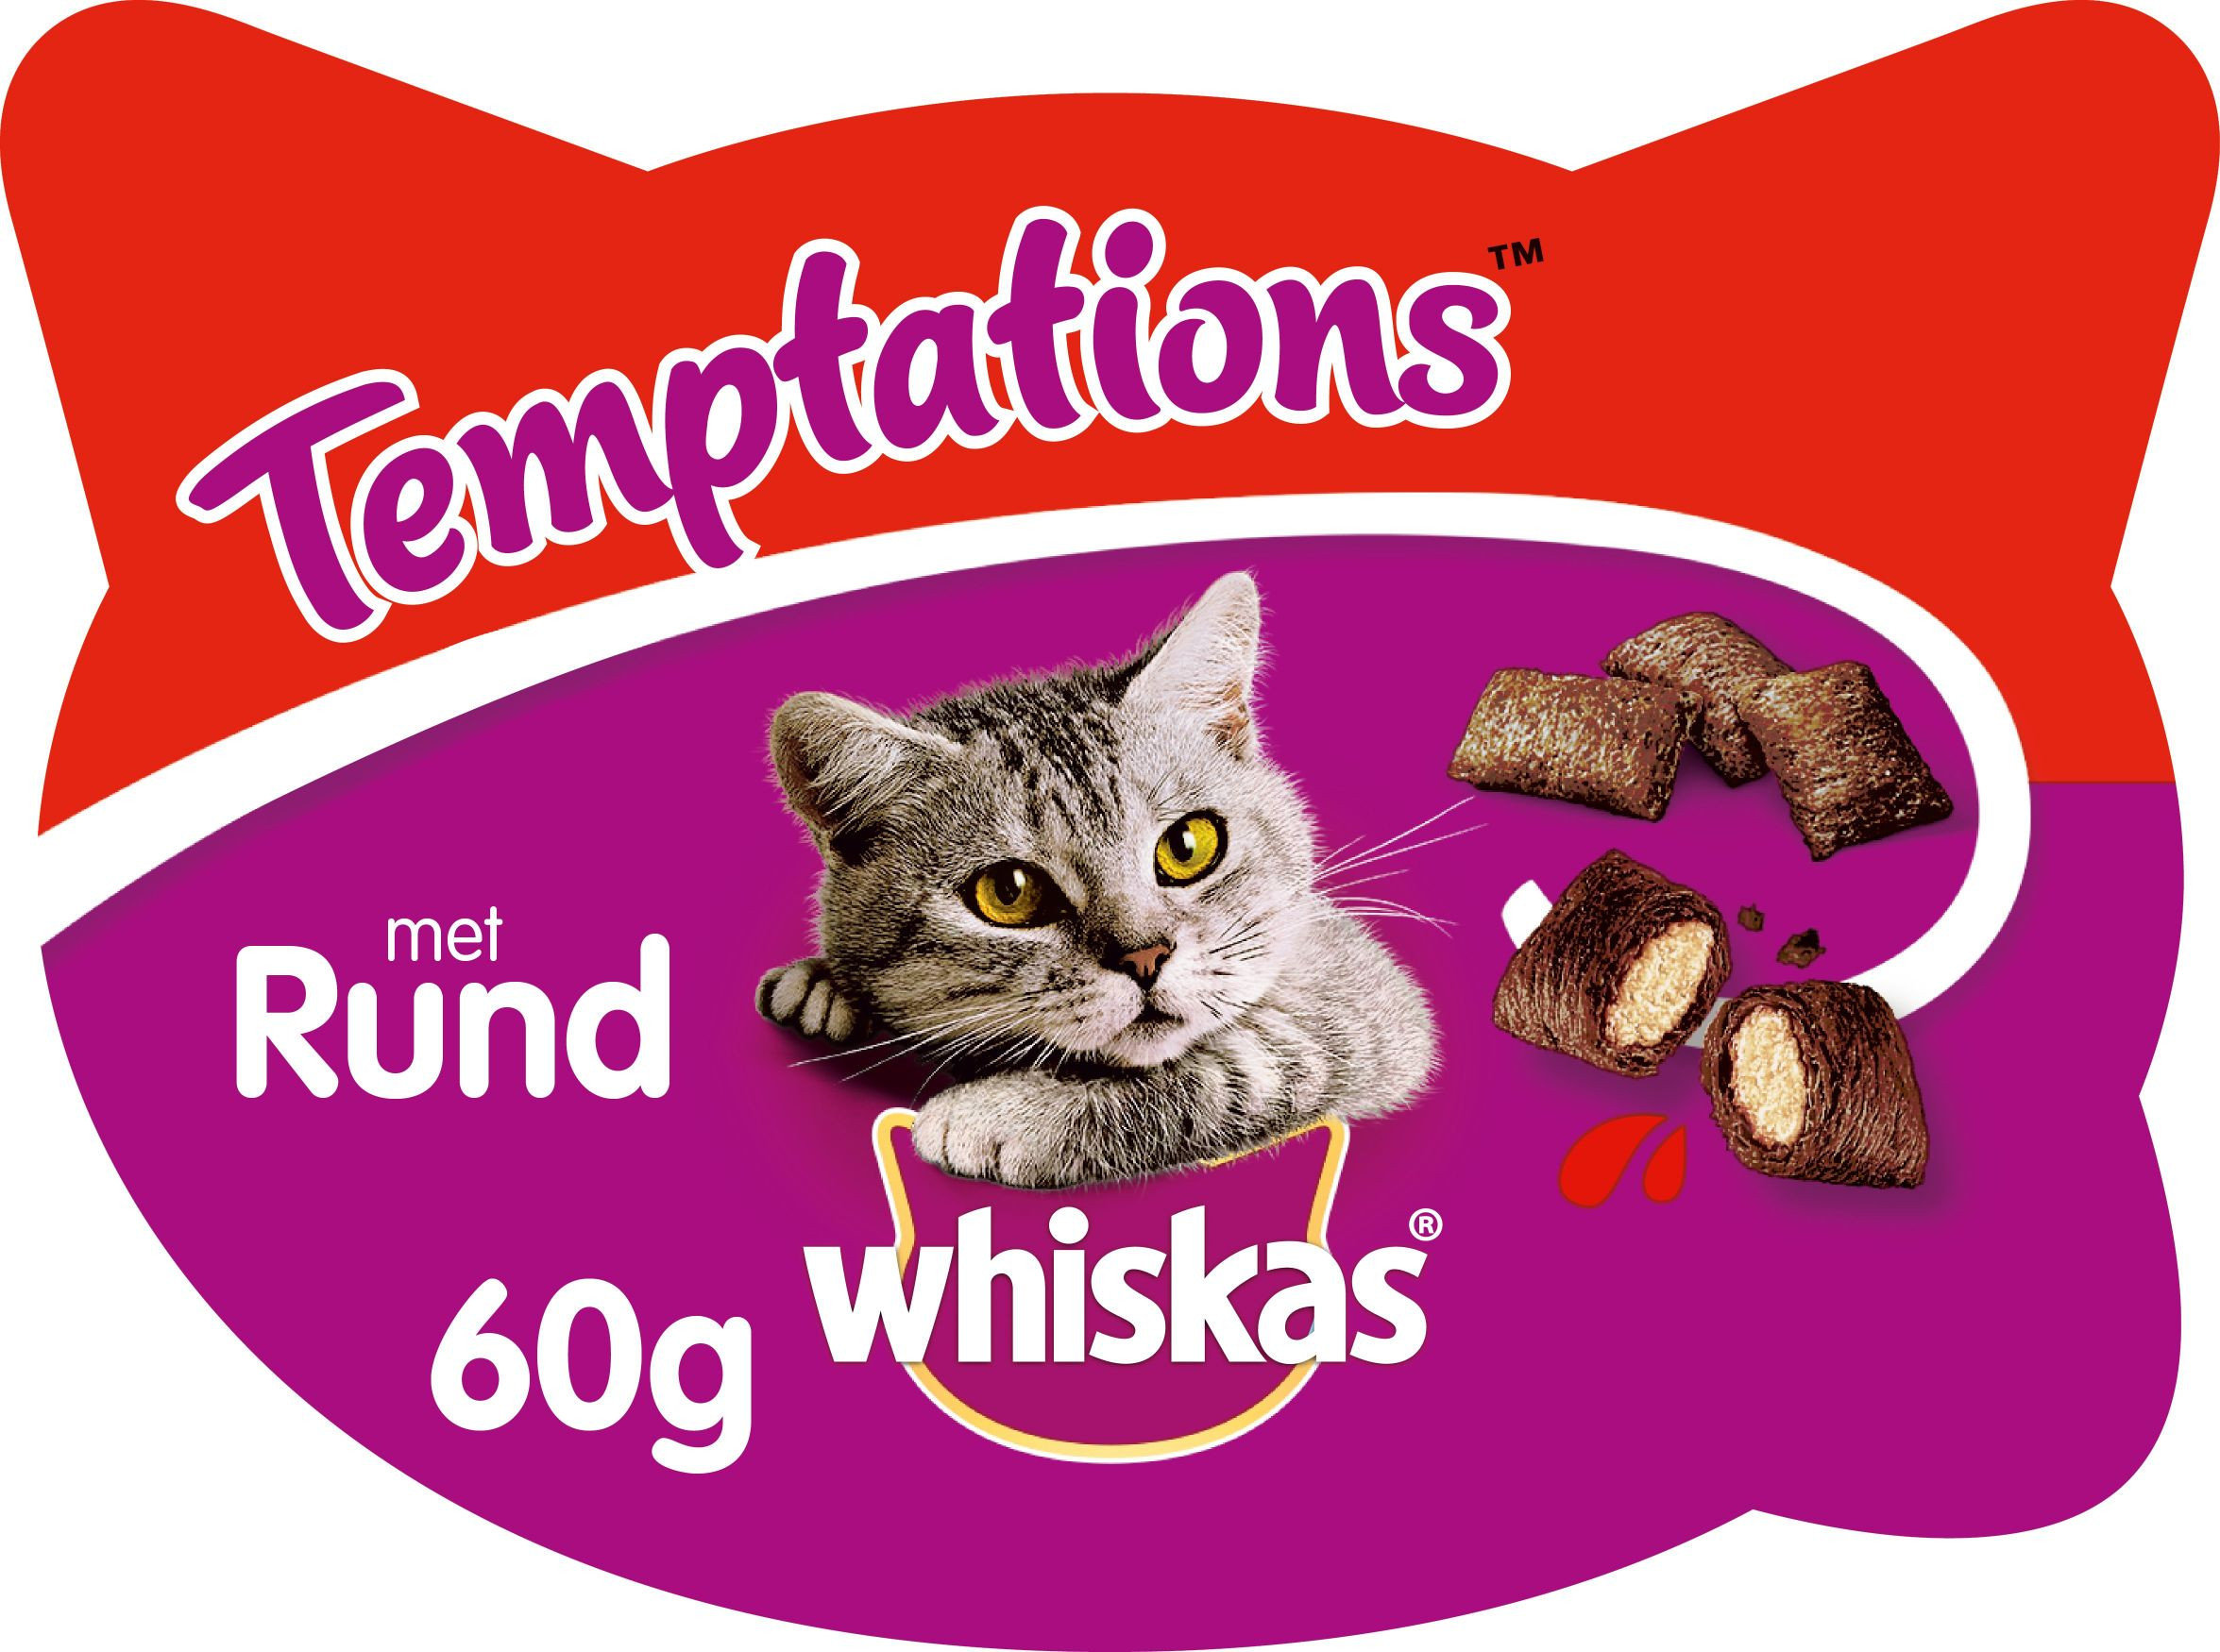 Whiskas Temptations Manzo per gatto